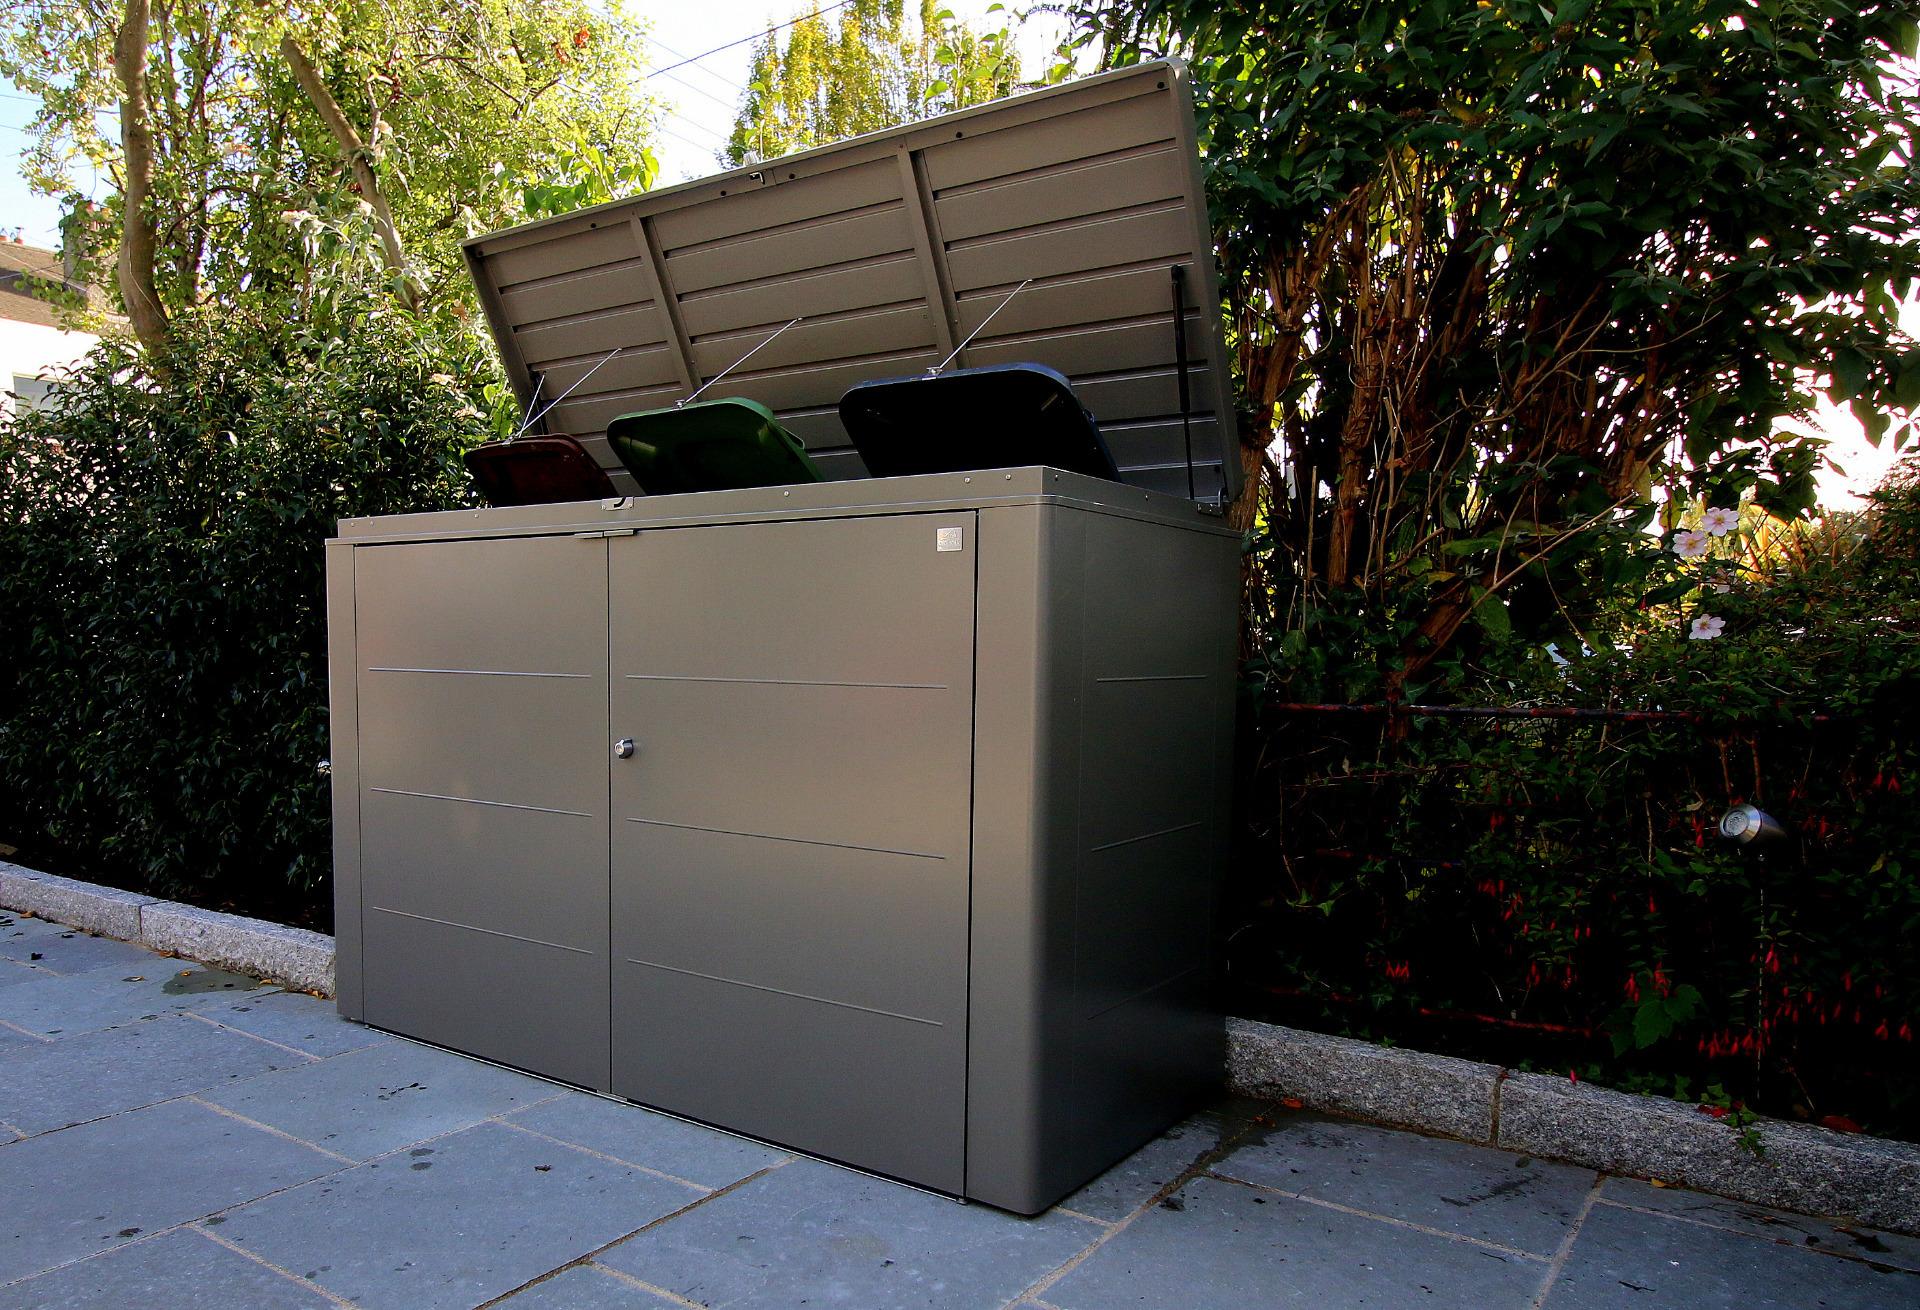 Biohort HighBoard Wheelie Bin Storage | The stylish way to store rubbish bins